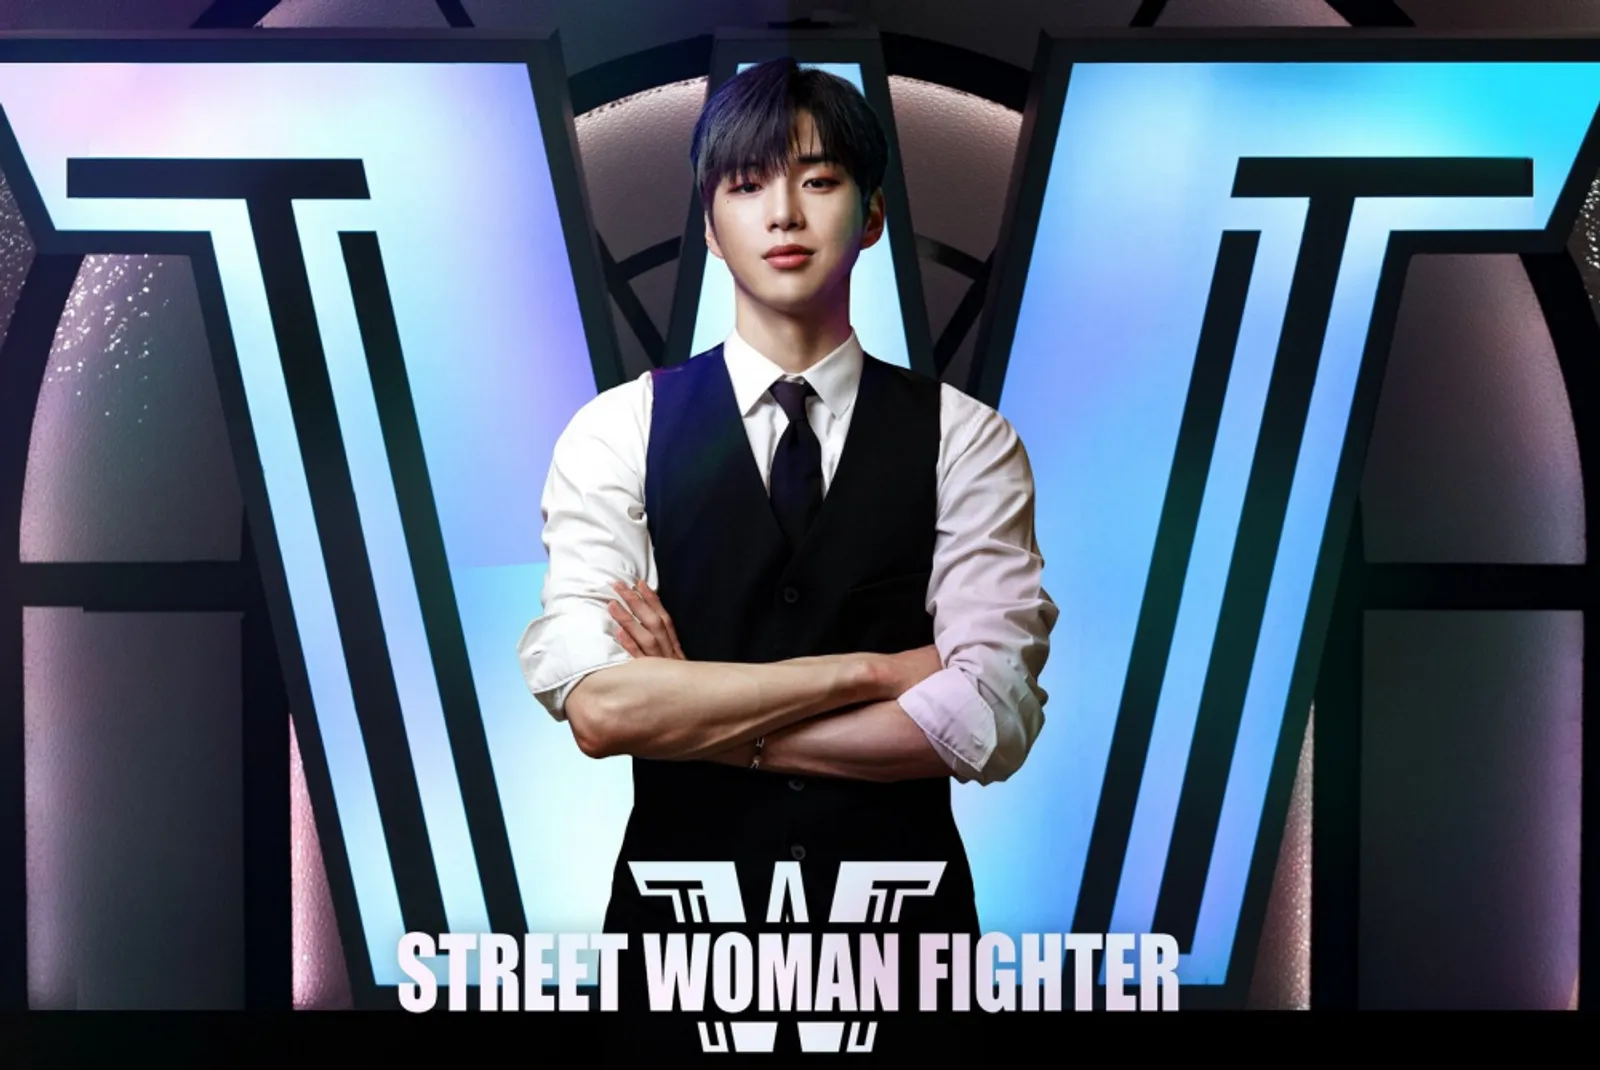 Dinilai Merendahkan 'Street Woman Fighter', Kang Daniel Angkat Bicara